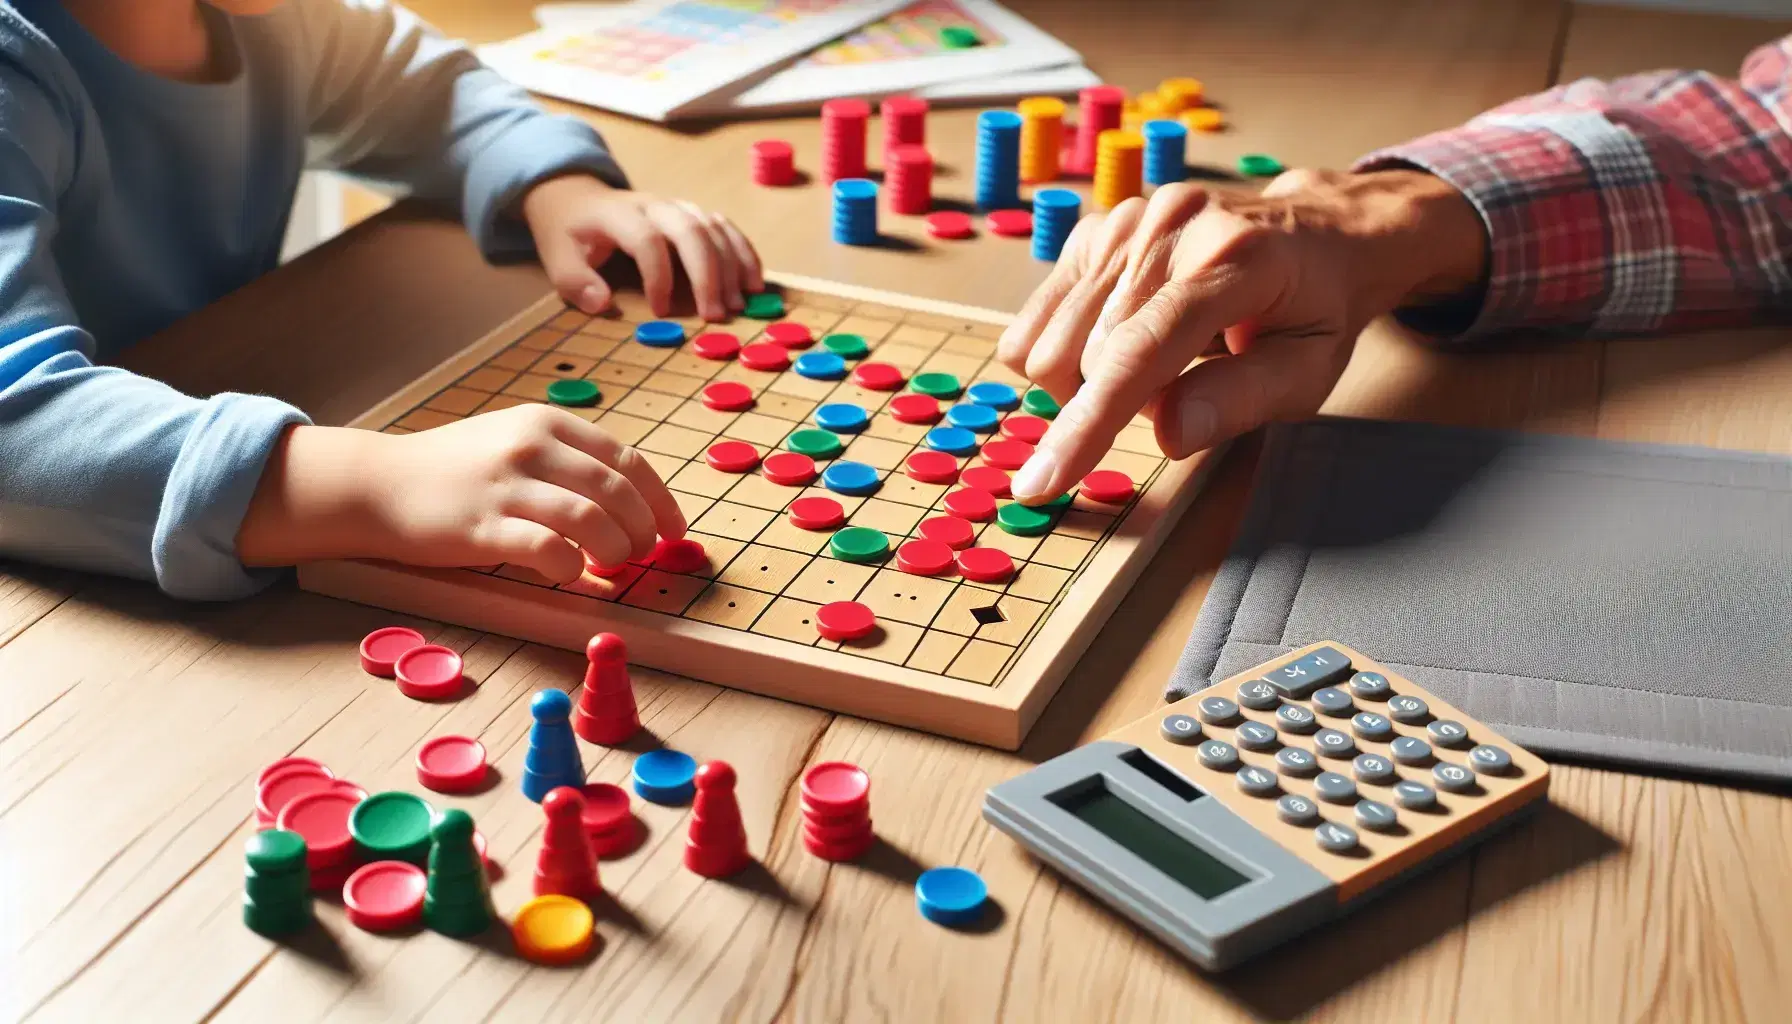 Manos de niño y adulto jugando juego de mesa educativo con fichas de colores y calculadora sobre mesa de madera.